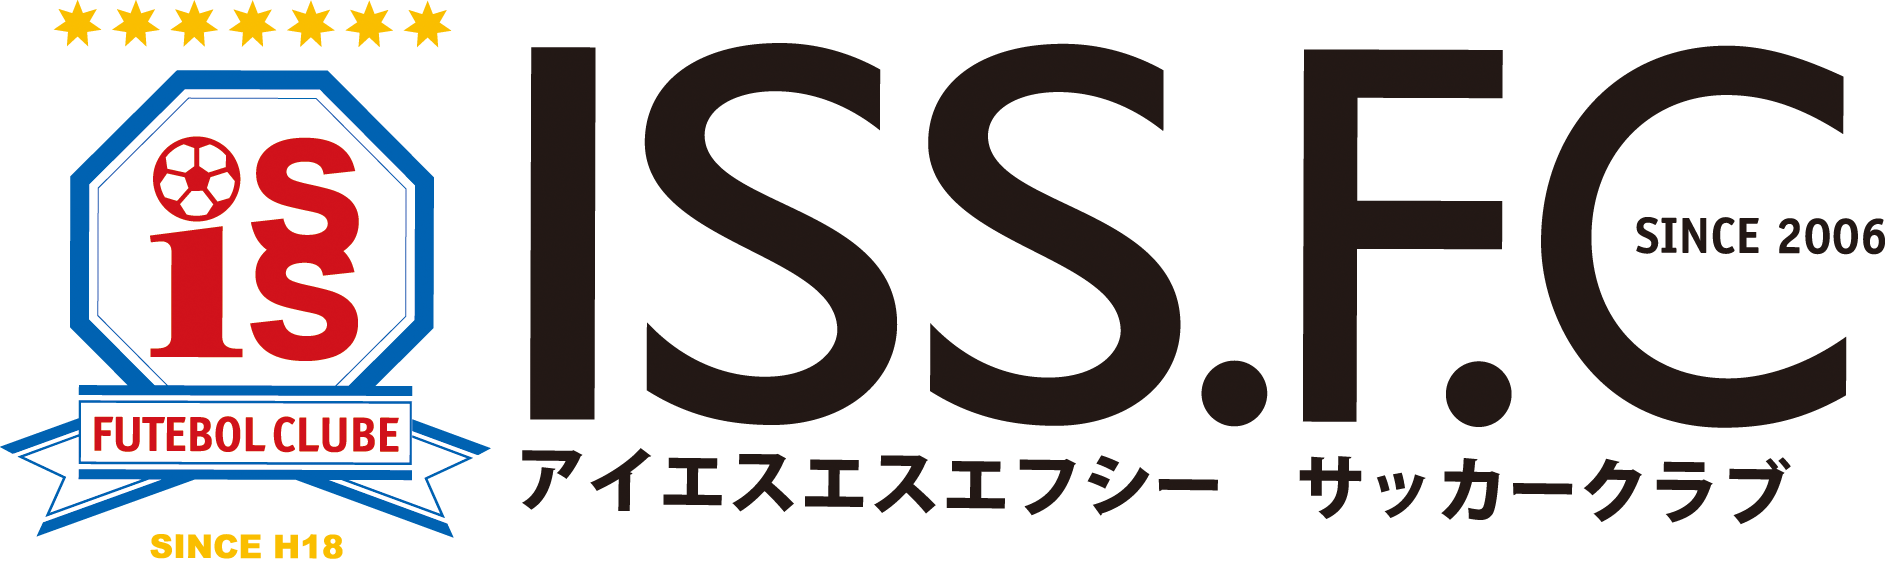 ISS.F.C サッカークラブ - 岐阜市・関市・各務原市 -